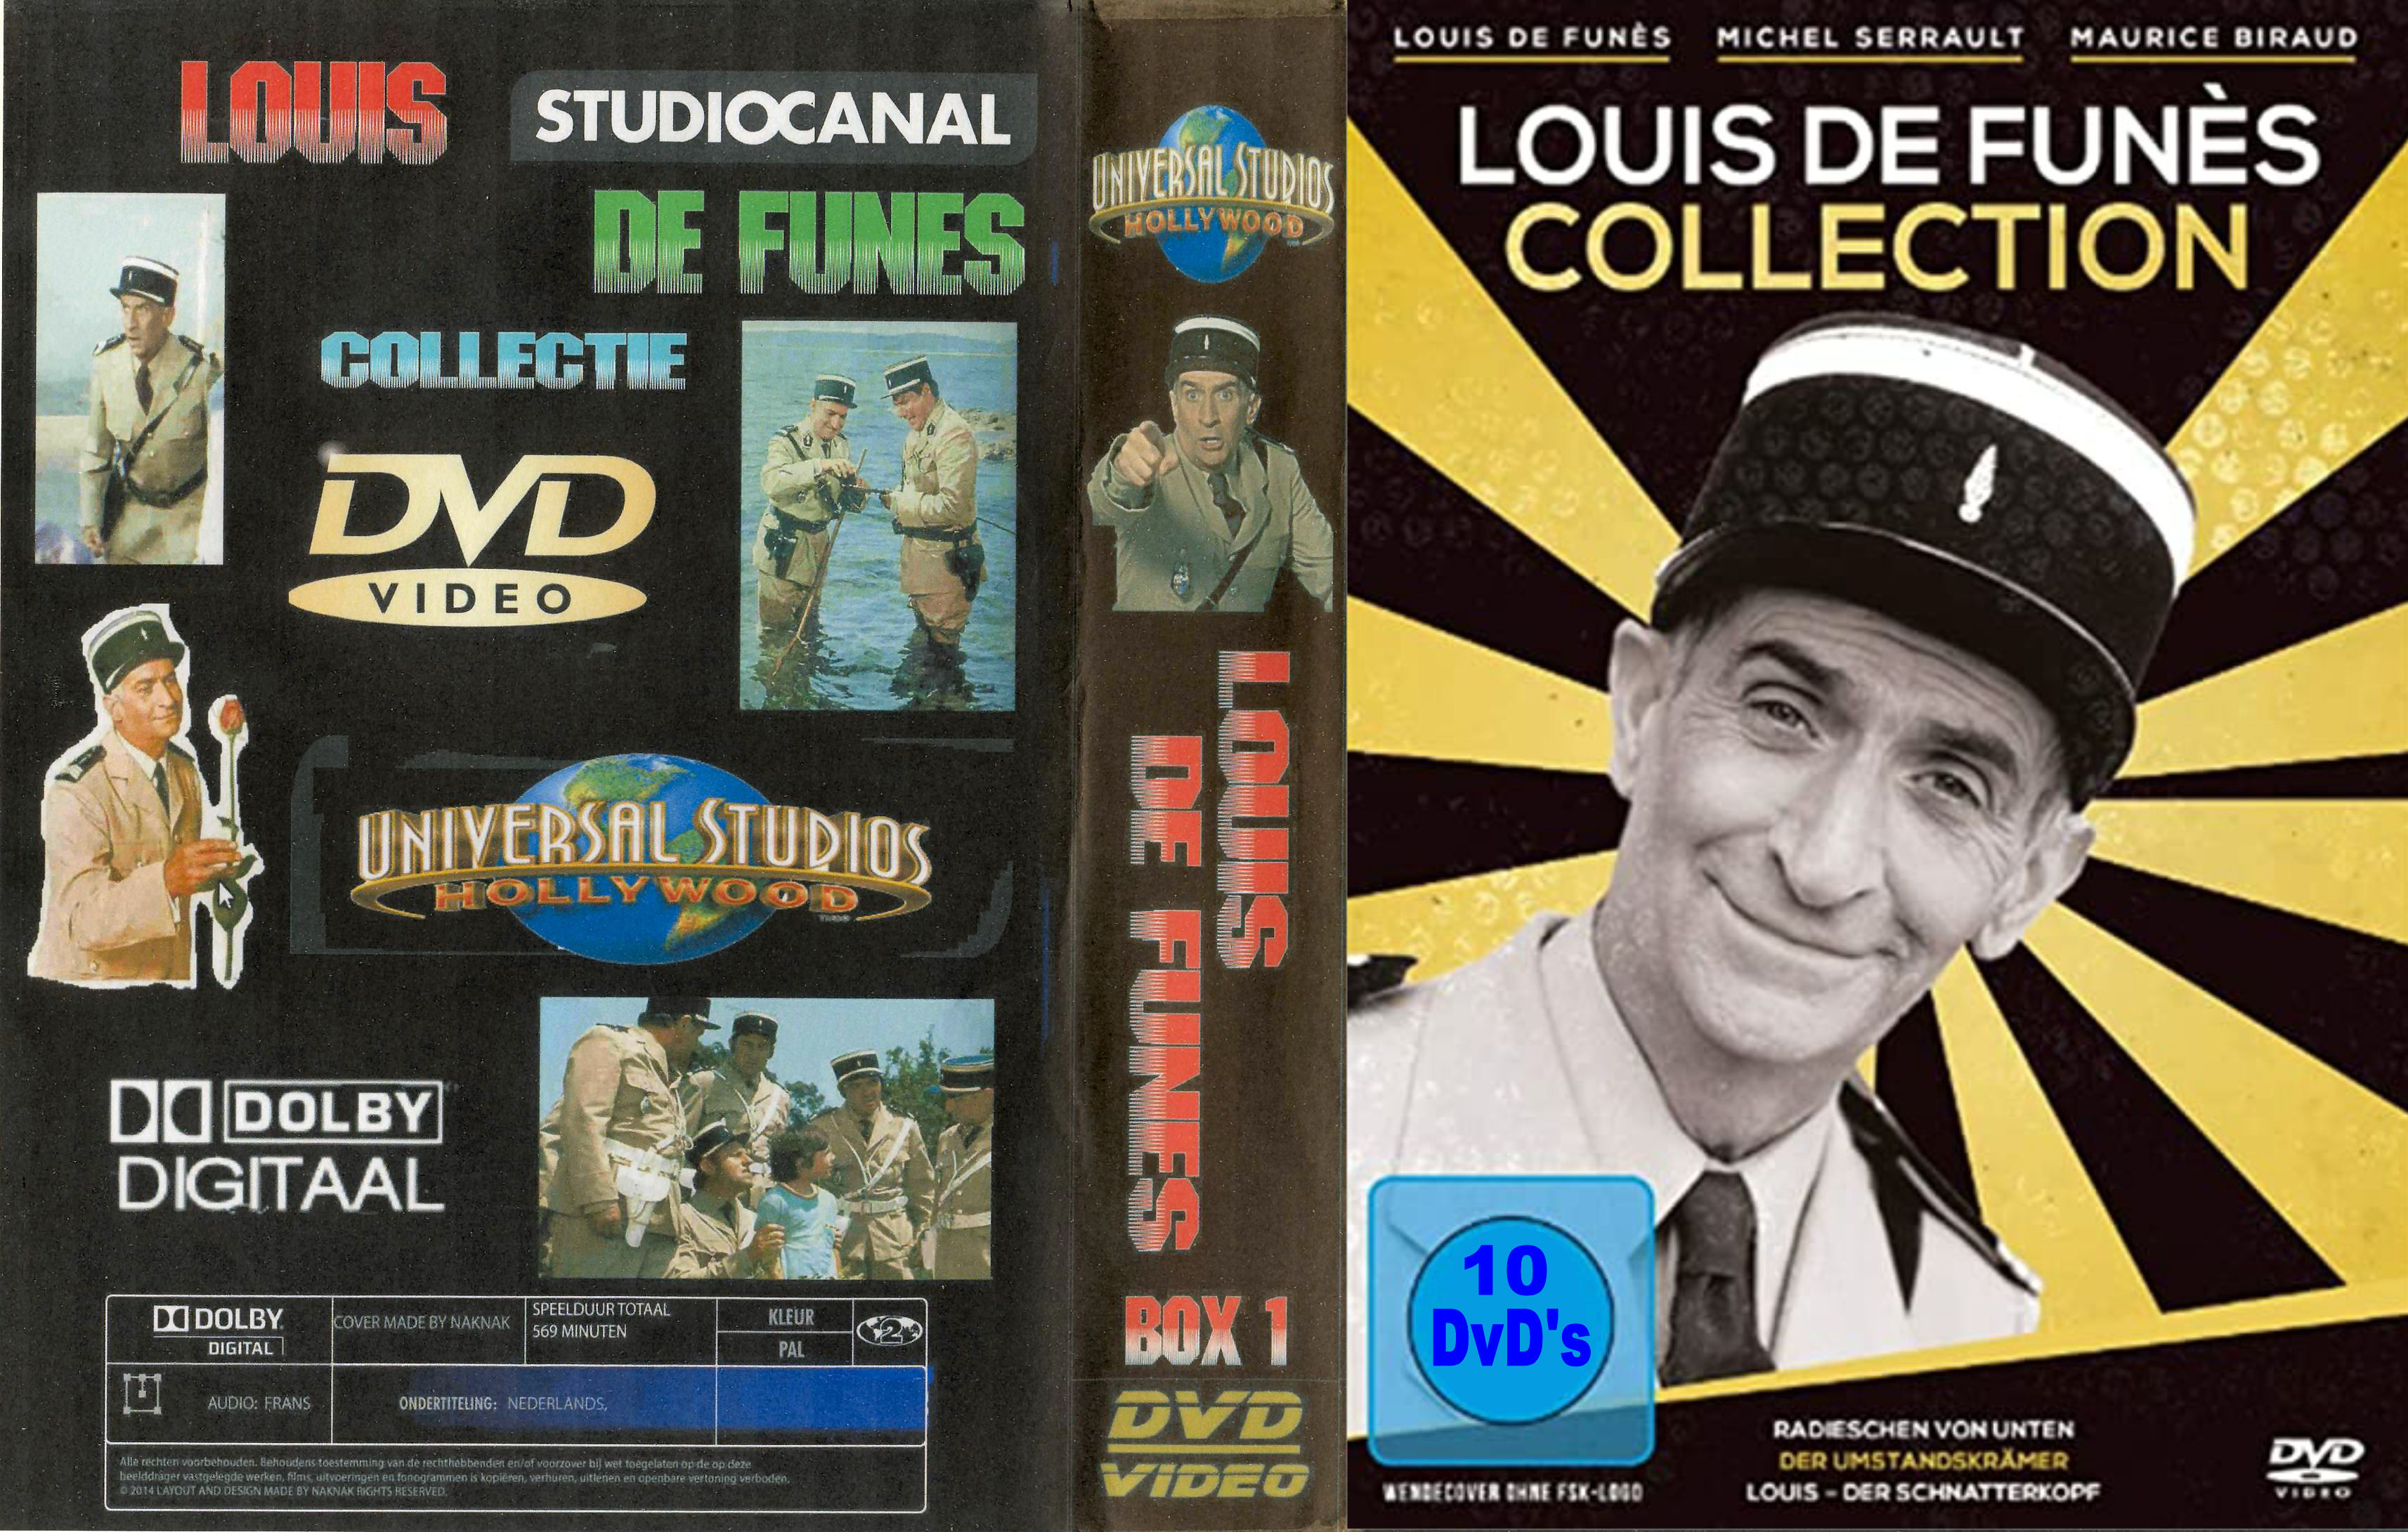 Louis de Funes Collectie ( 30 DvD's ) - DvD 3